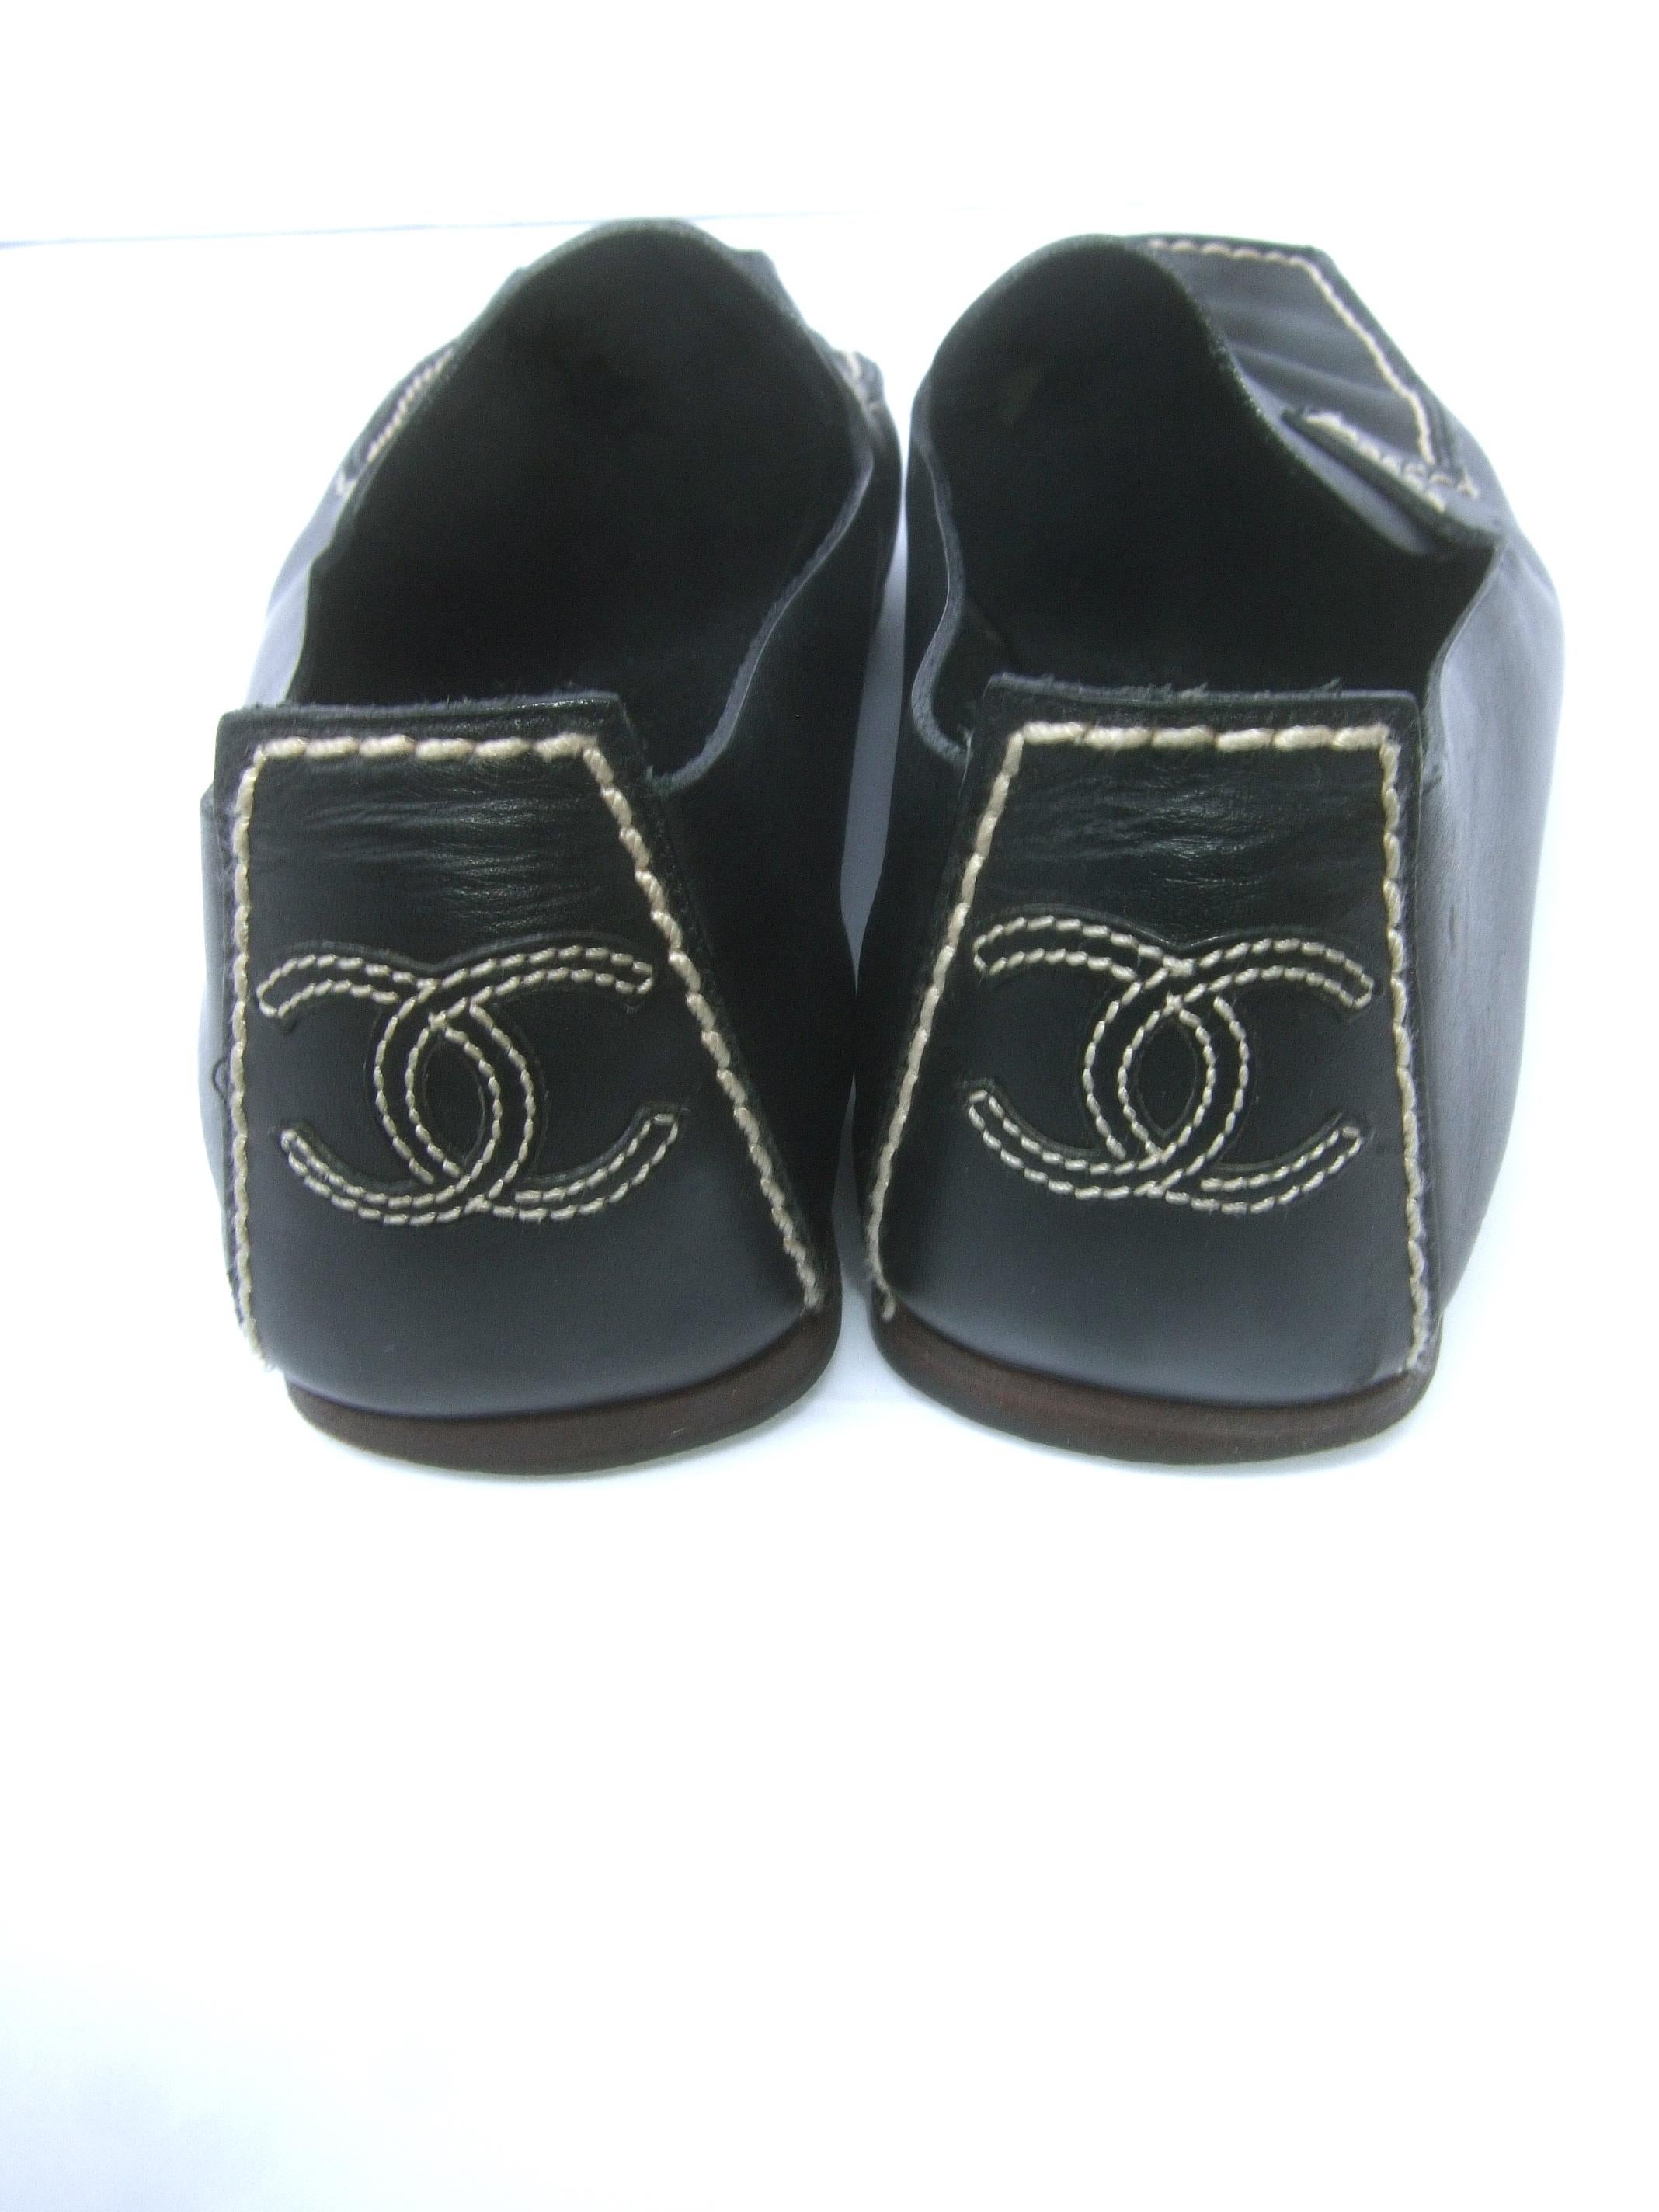 Women's Chanel Black Leather Slip On Italian Low Heel Flats Size 38.5 c 1990s